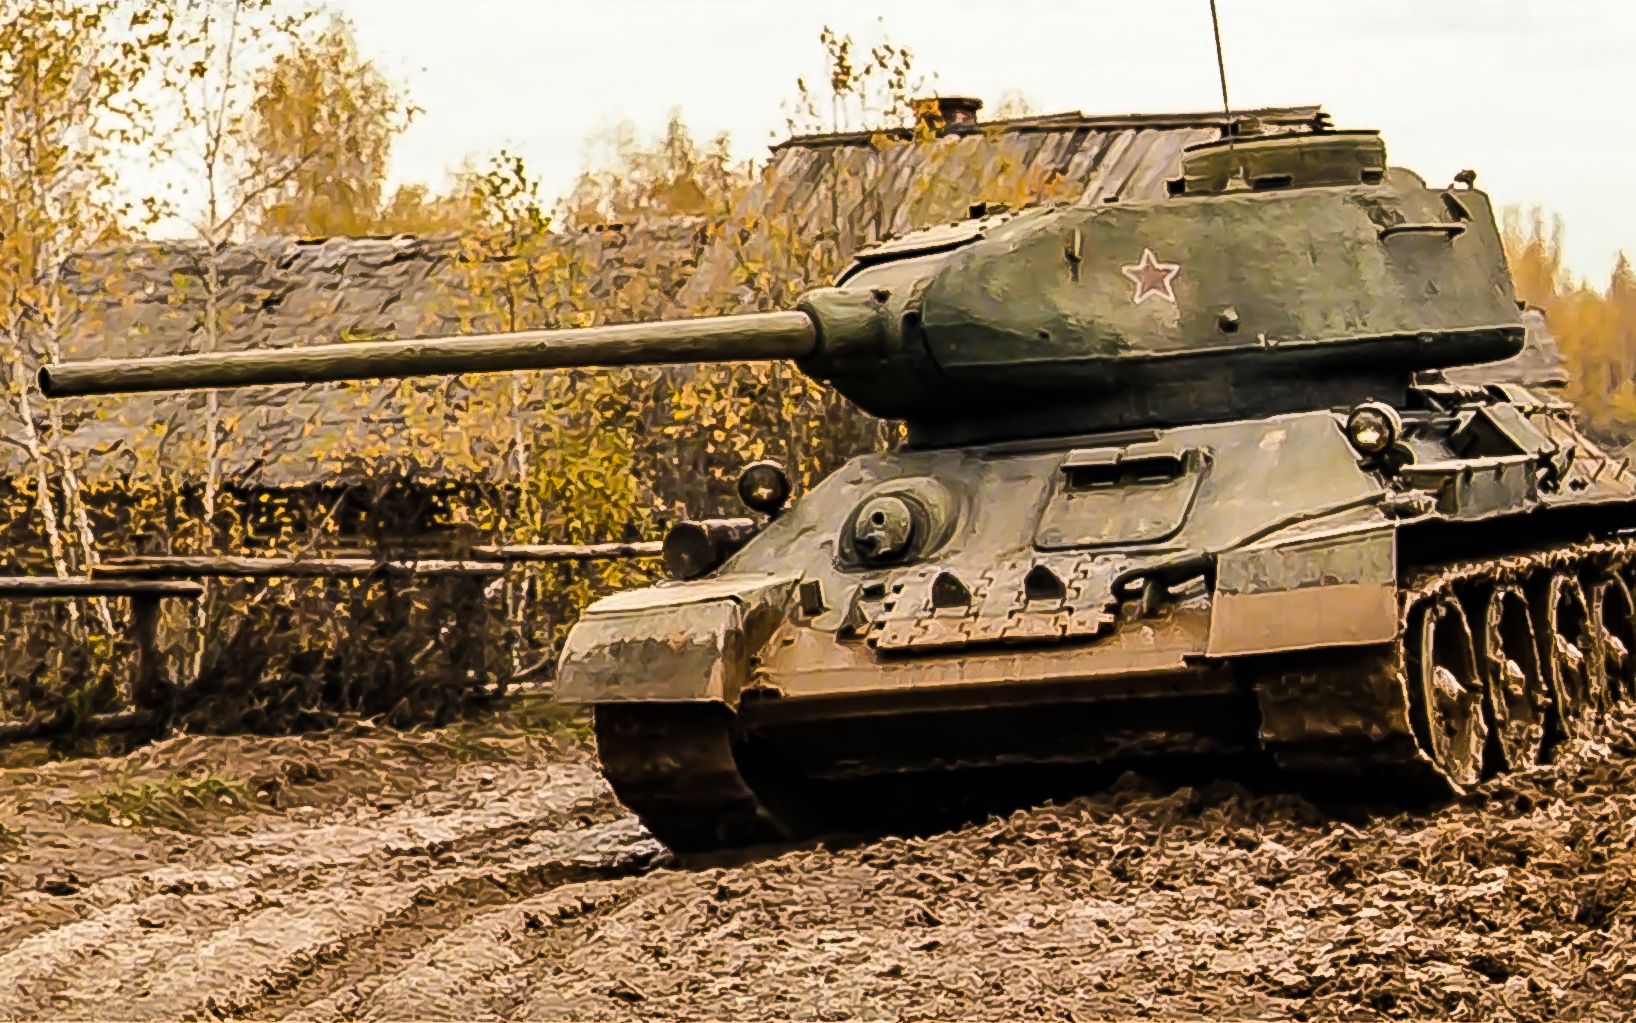 苏联T-54和T-55坦克领衔史上最多数量坦克排行榜 - 2021年3月3日, 俄罗斯卫星通讯社